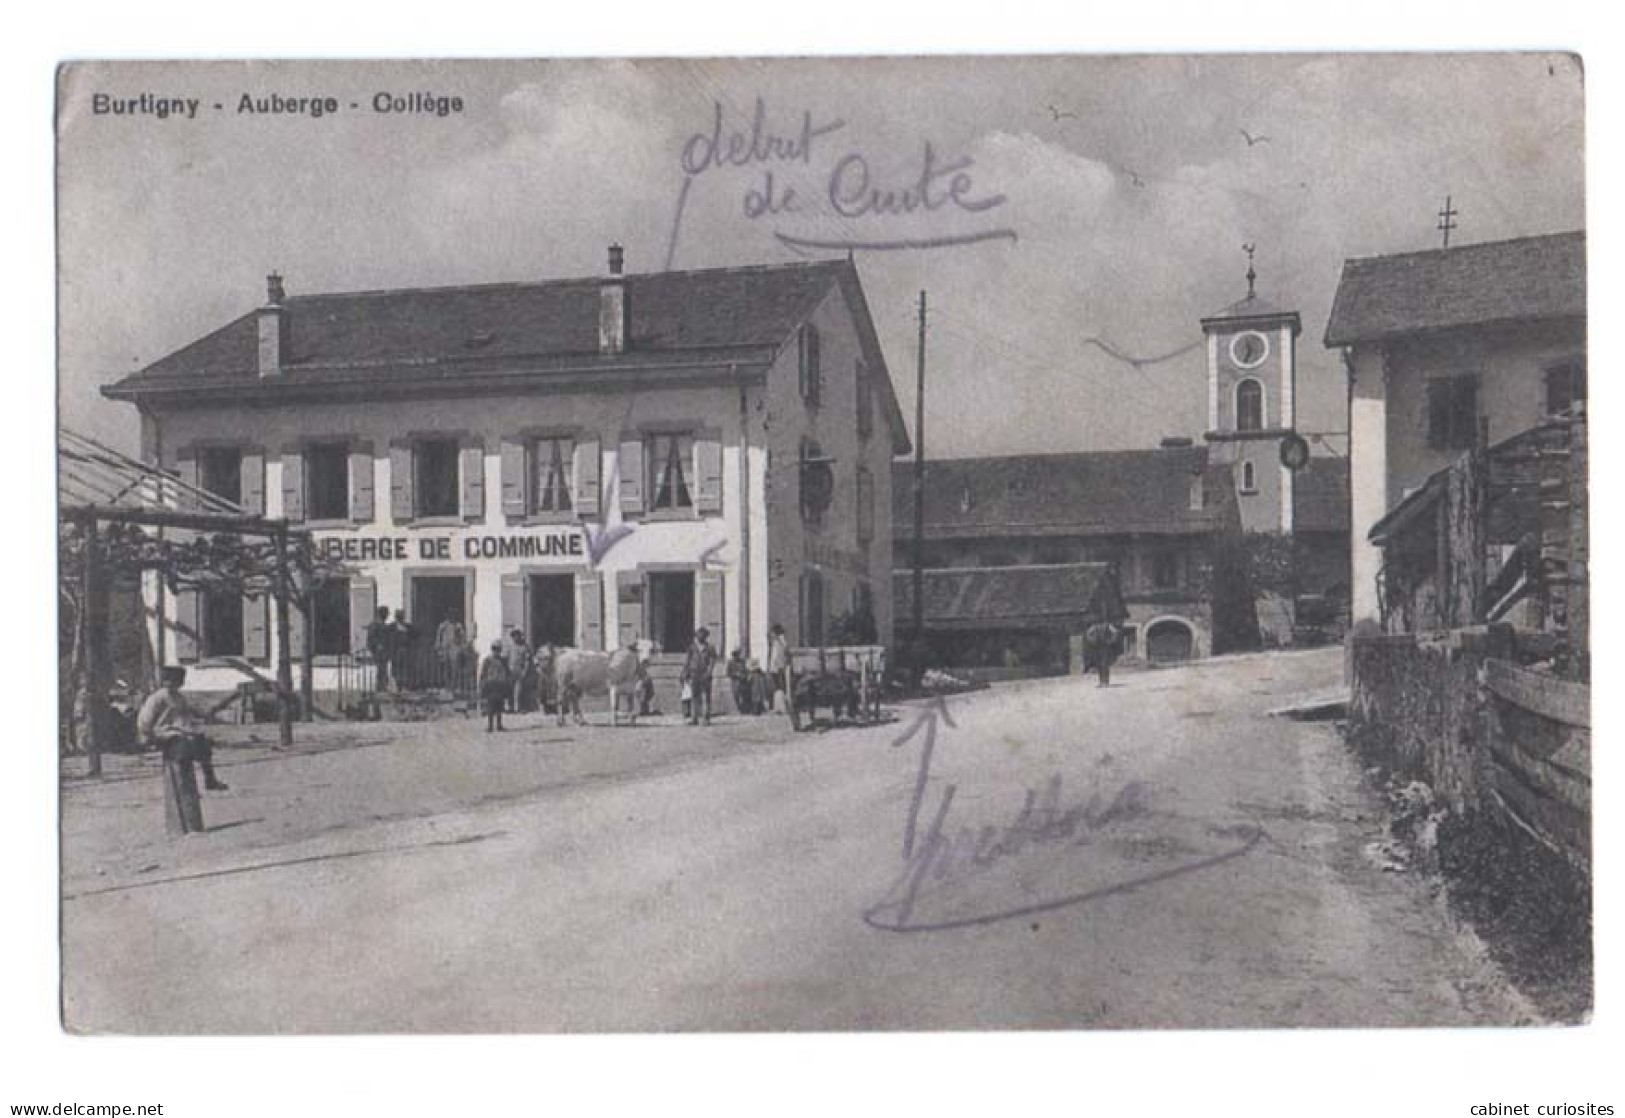 BURTIGNY - Auberge - Collège - 1917 - DISTRICT DE ROLLE - Auberge De Commune - Animée - Vache - Chariot - RARE - Burtigny